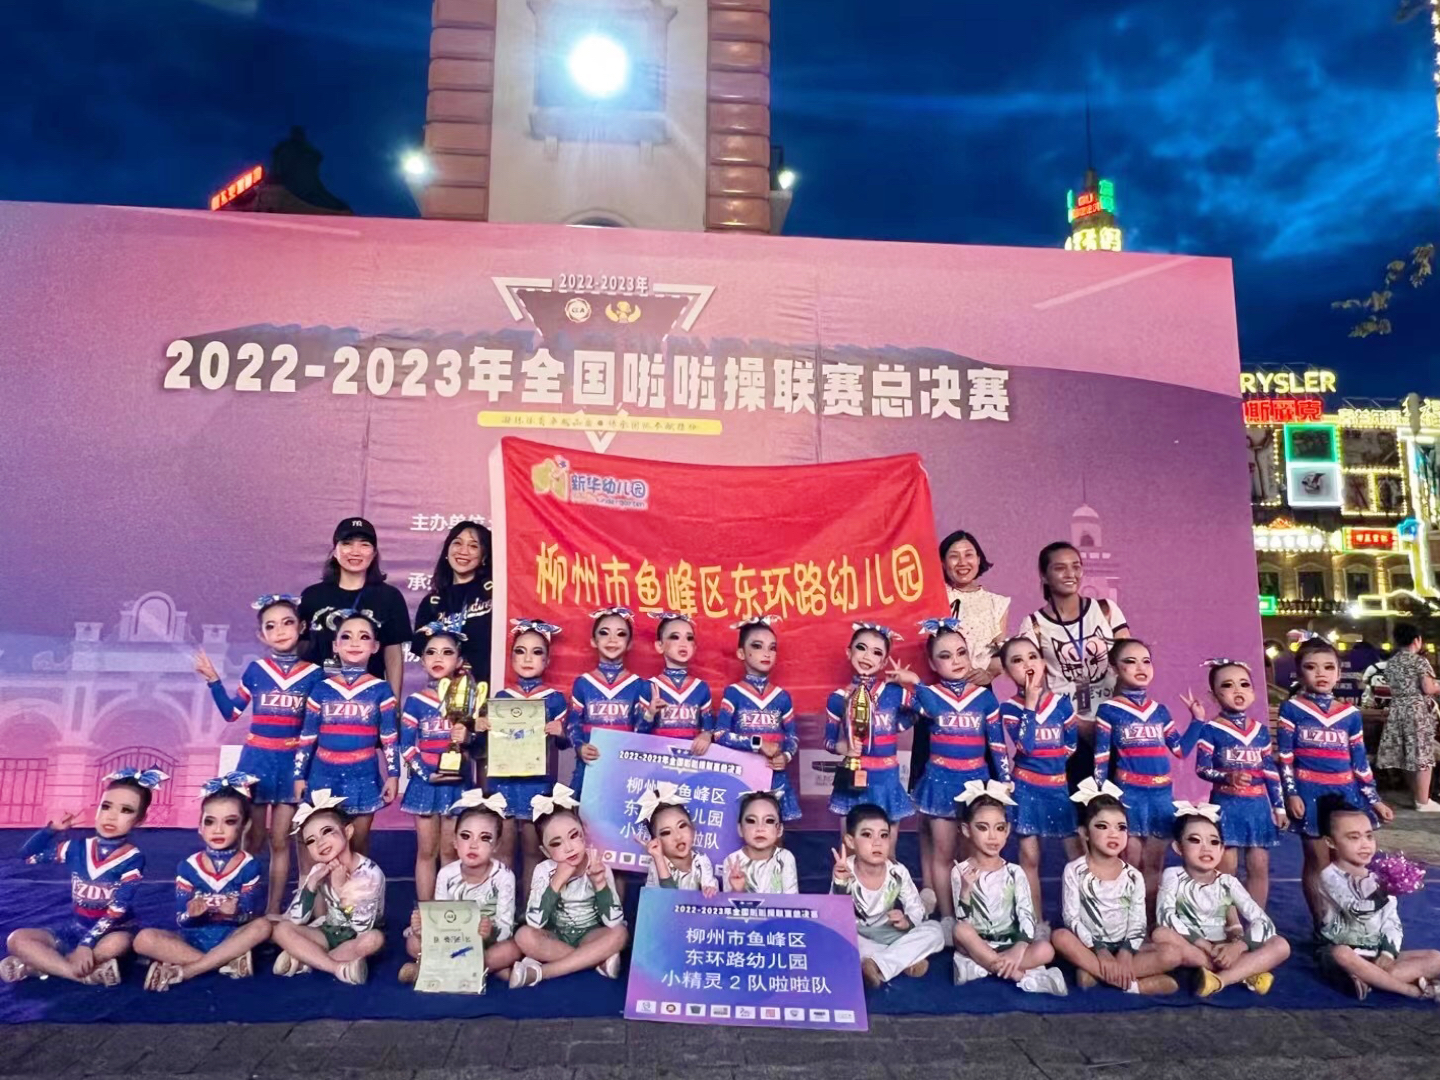 【喜报】东环路幼儿园啦啦操队荣获全国联赛奖项